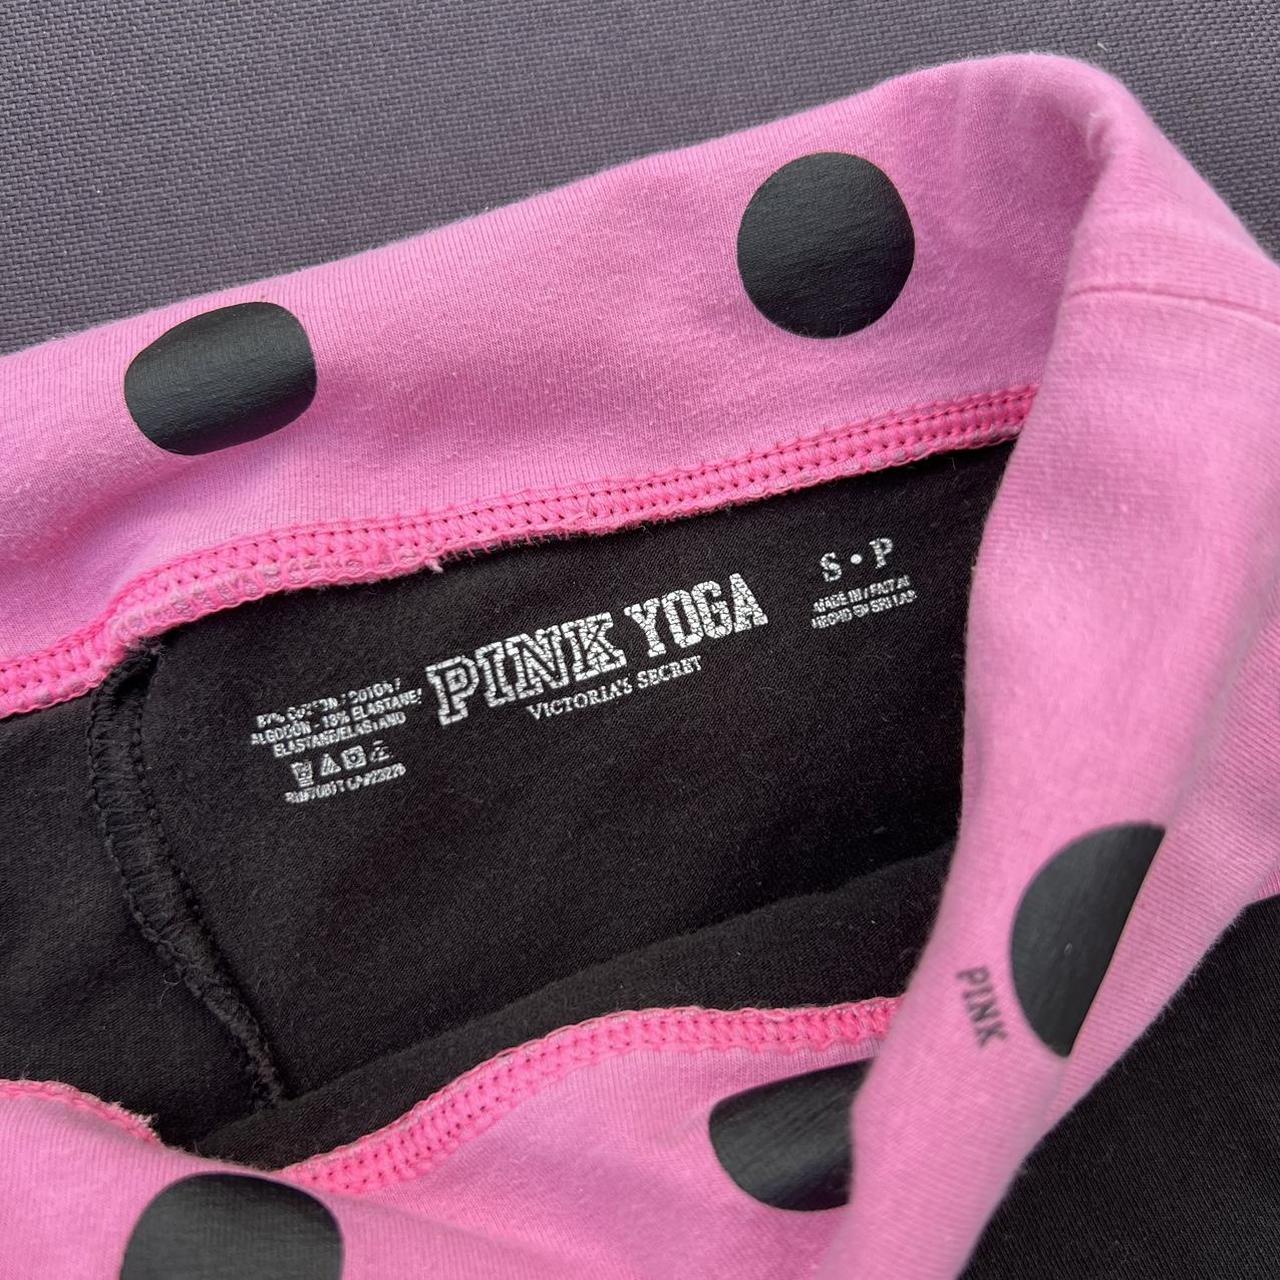 Victoria's Secret PINK fold over flare yoga pants - Depop